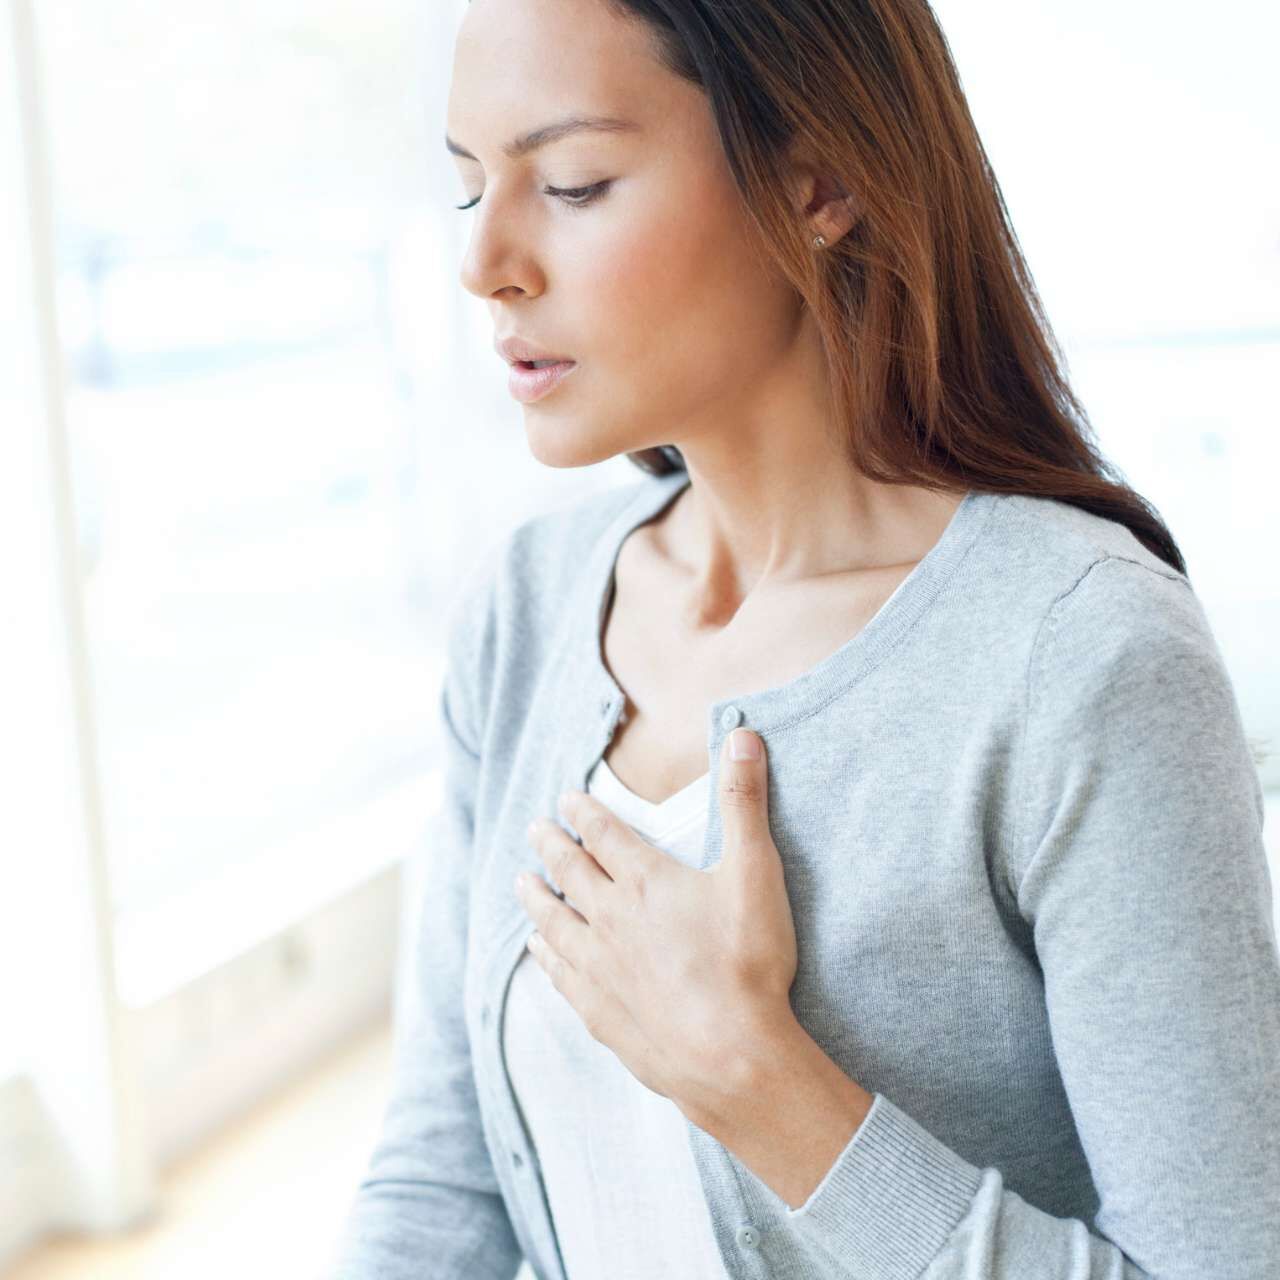 Il gonfiore può causare alterazioni del ritmo cardiaco, una sensazione di oppressione e peso al petto e difficoltà respiratorie